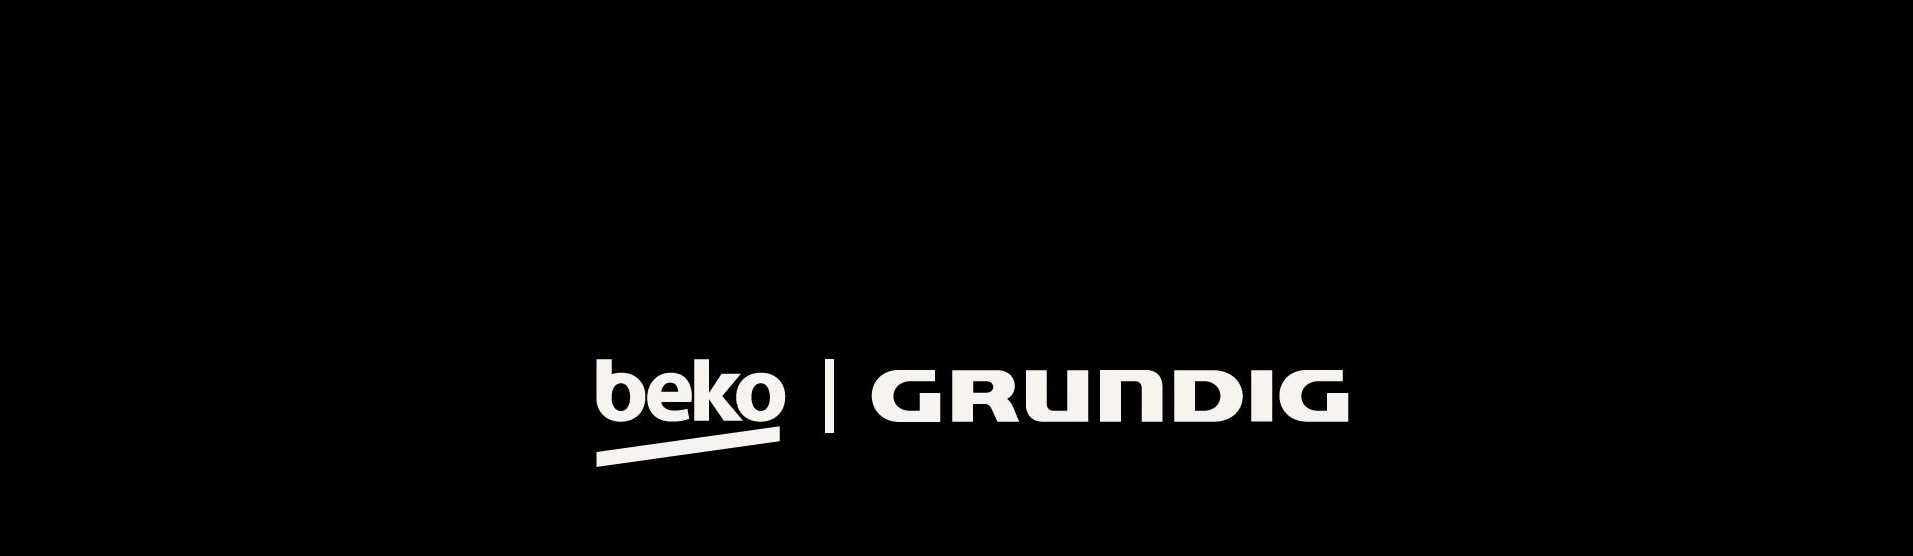 Für noch mehr Nähe: Die Beko Grundig Deutschland GmbH baut Vertriebsstruktur aus